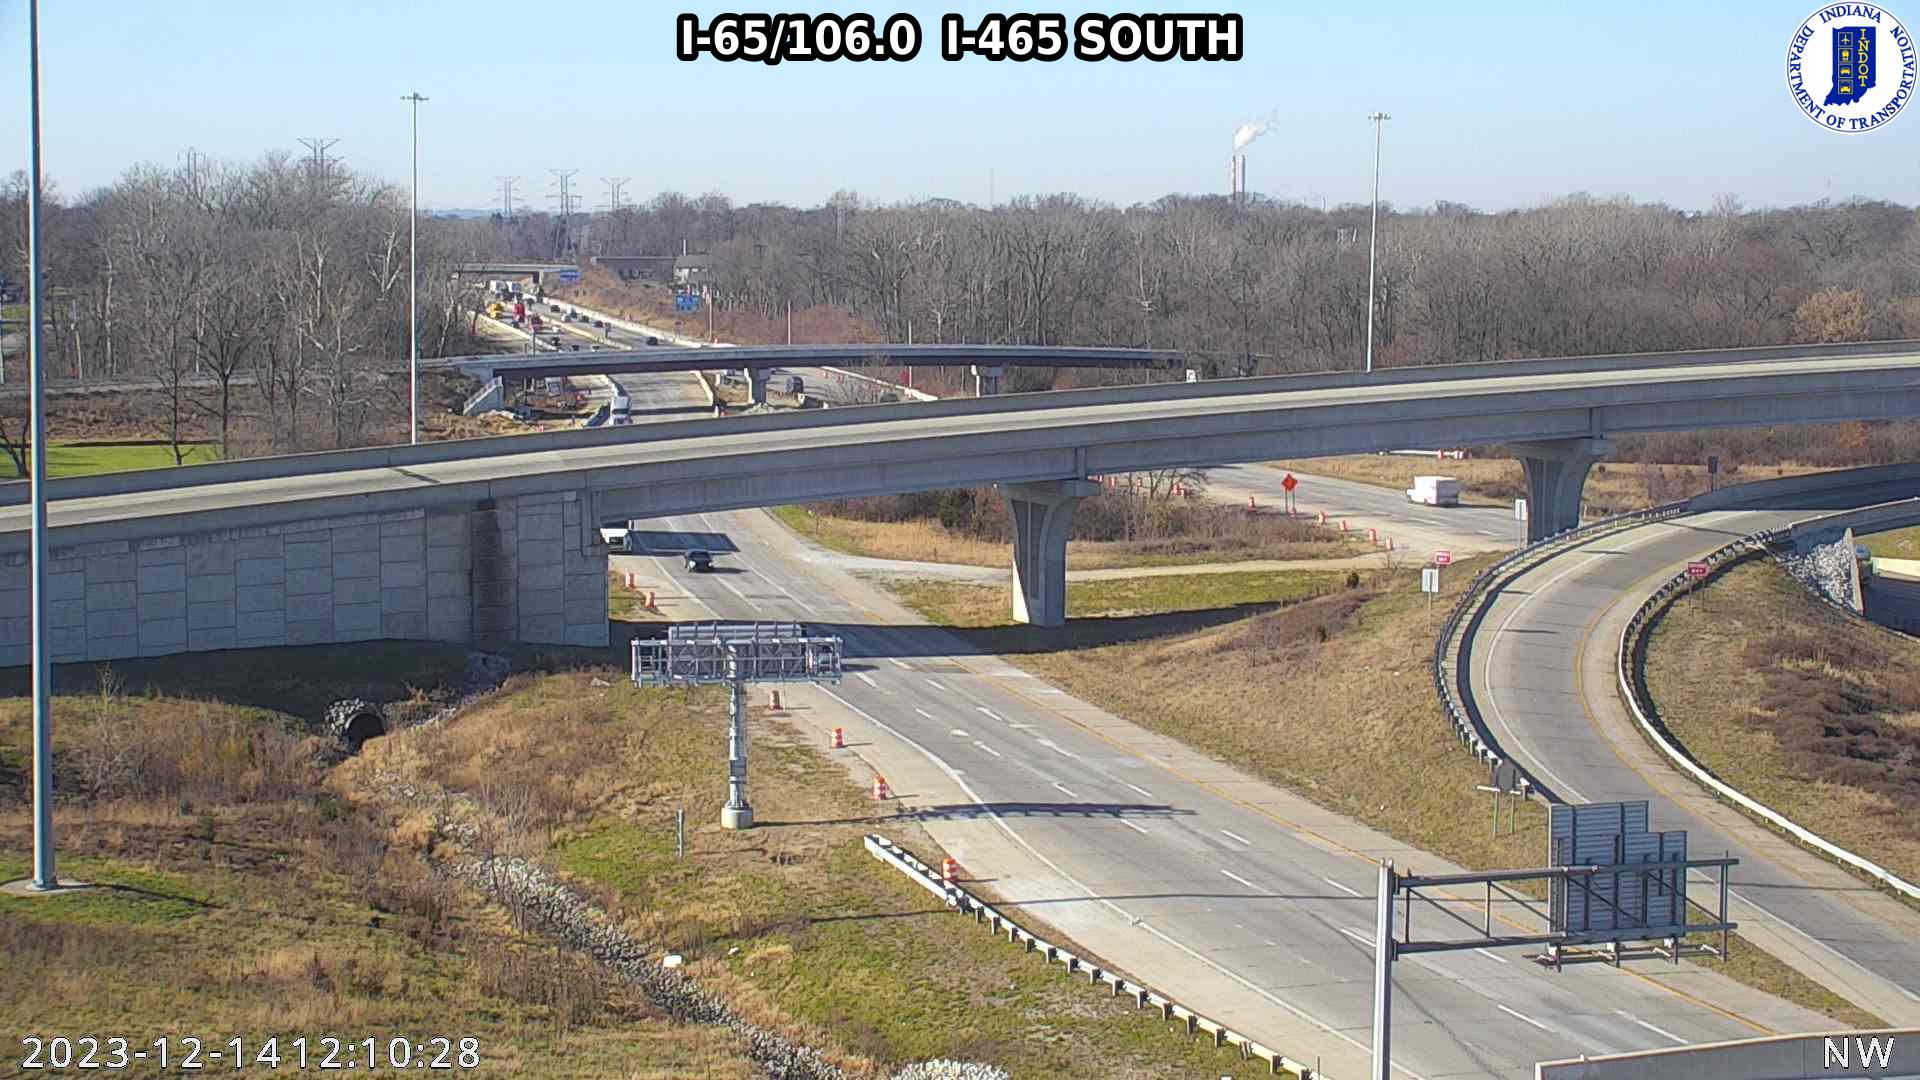 Traffic Cam Indianapolis: I-65: I-65/106.0 I-465 SOUTH : I-65/106.0 I-465 SOUTH